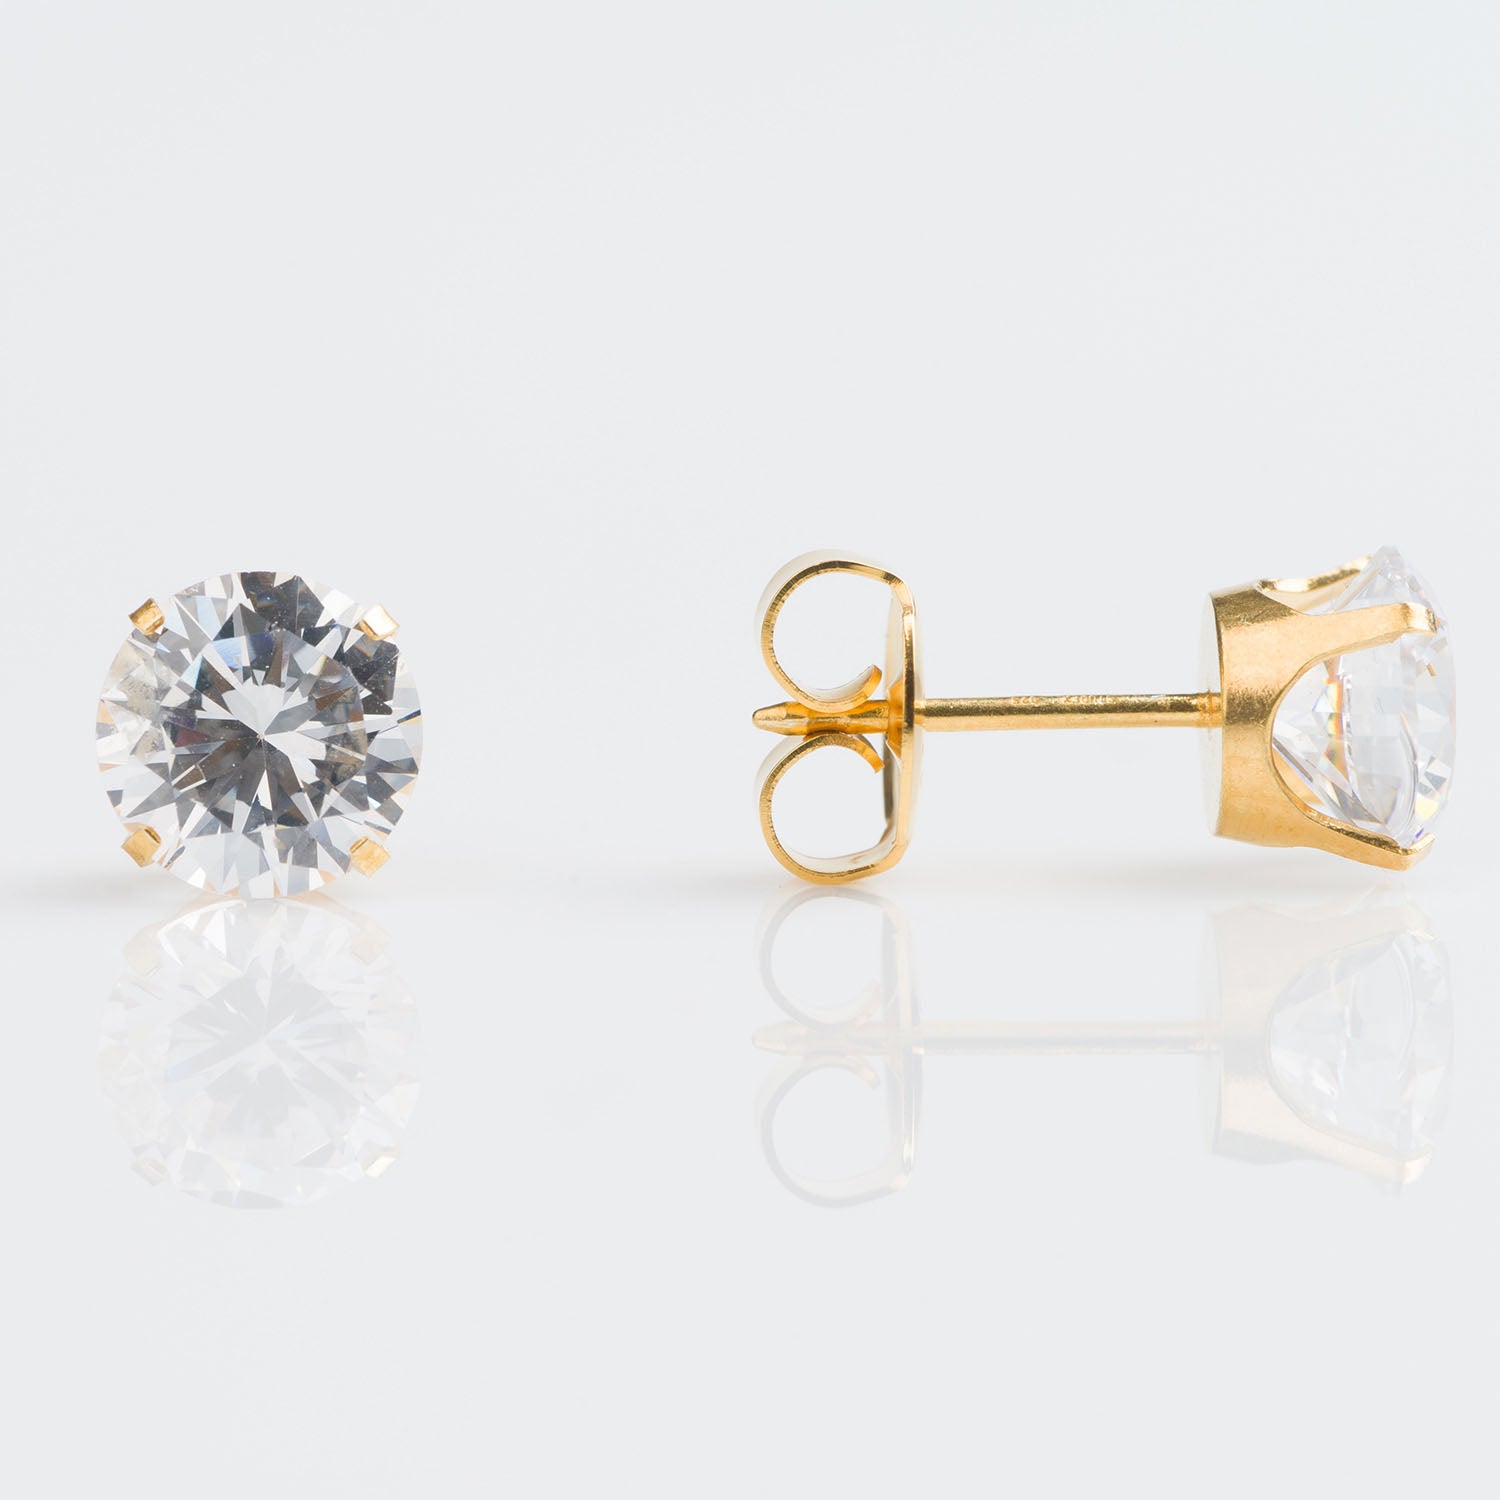 Initial Piercing - 9ct Gold 7mm Tiffany set cubic zircon earrings